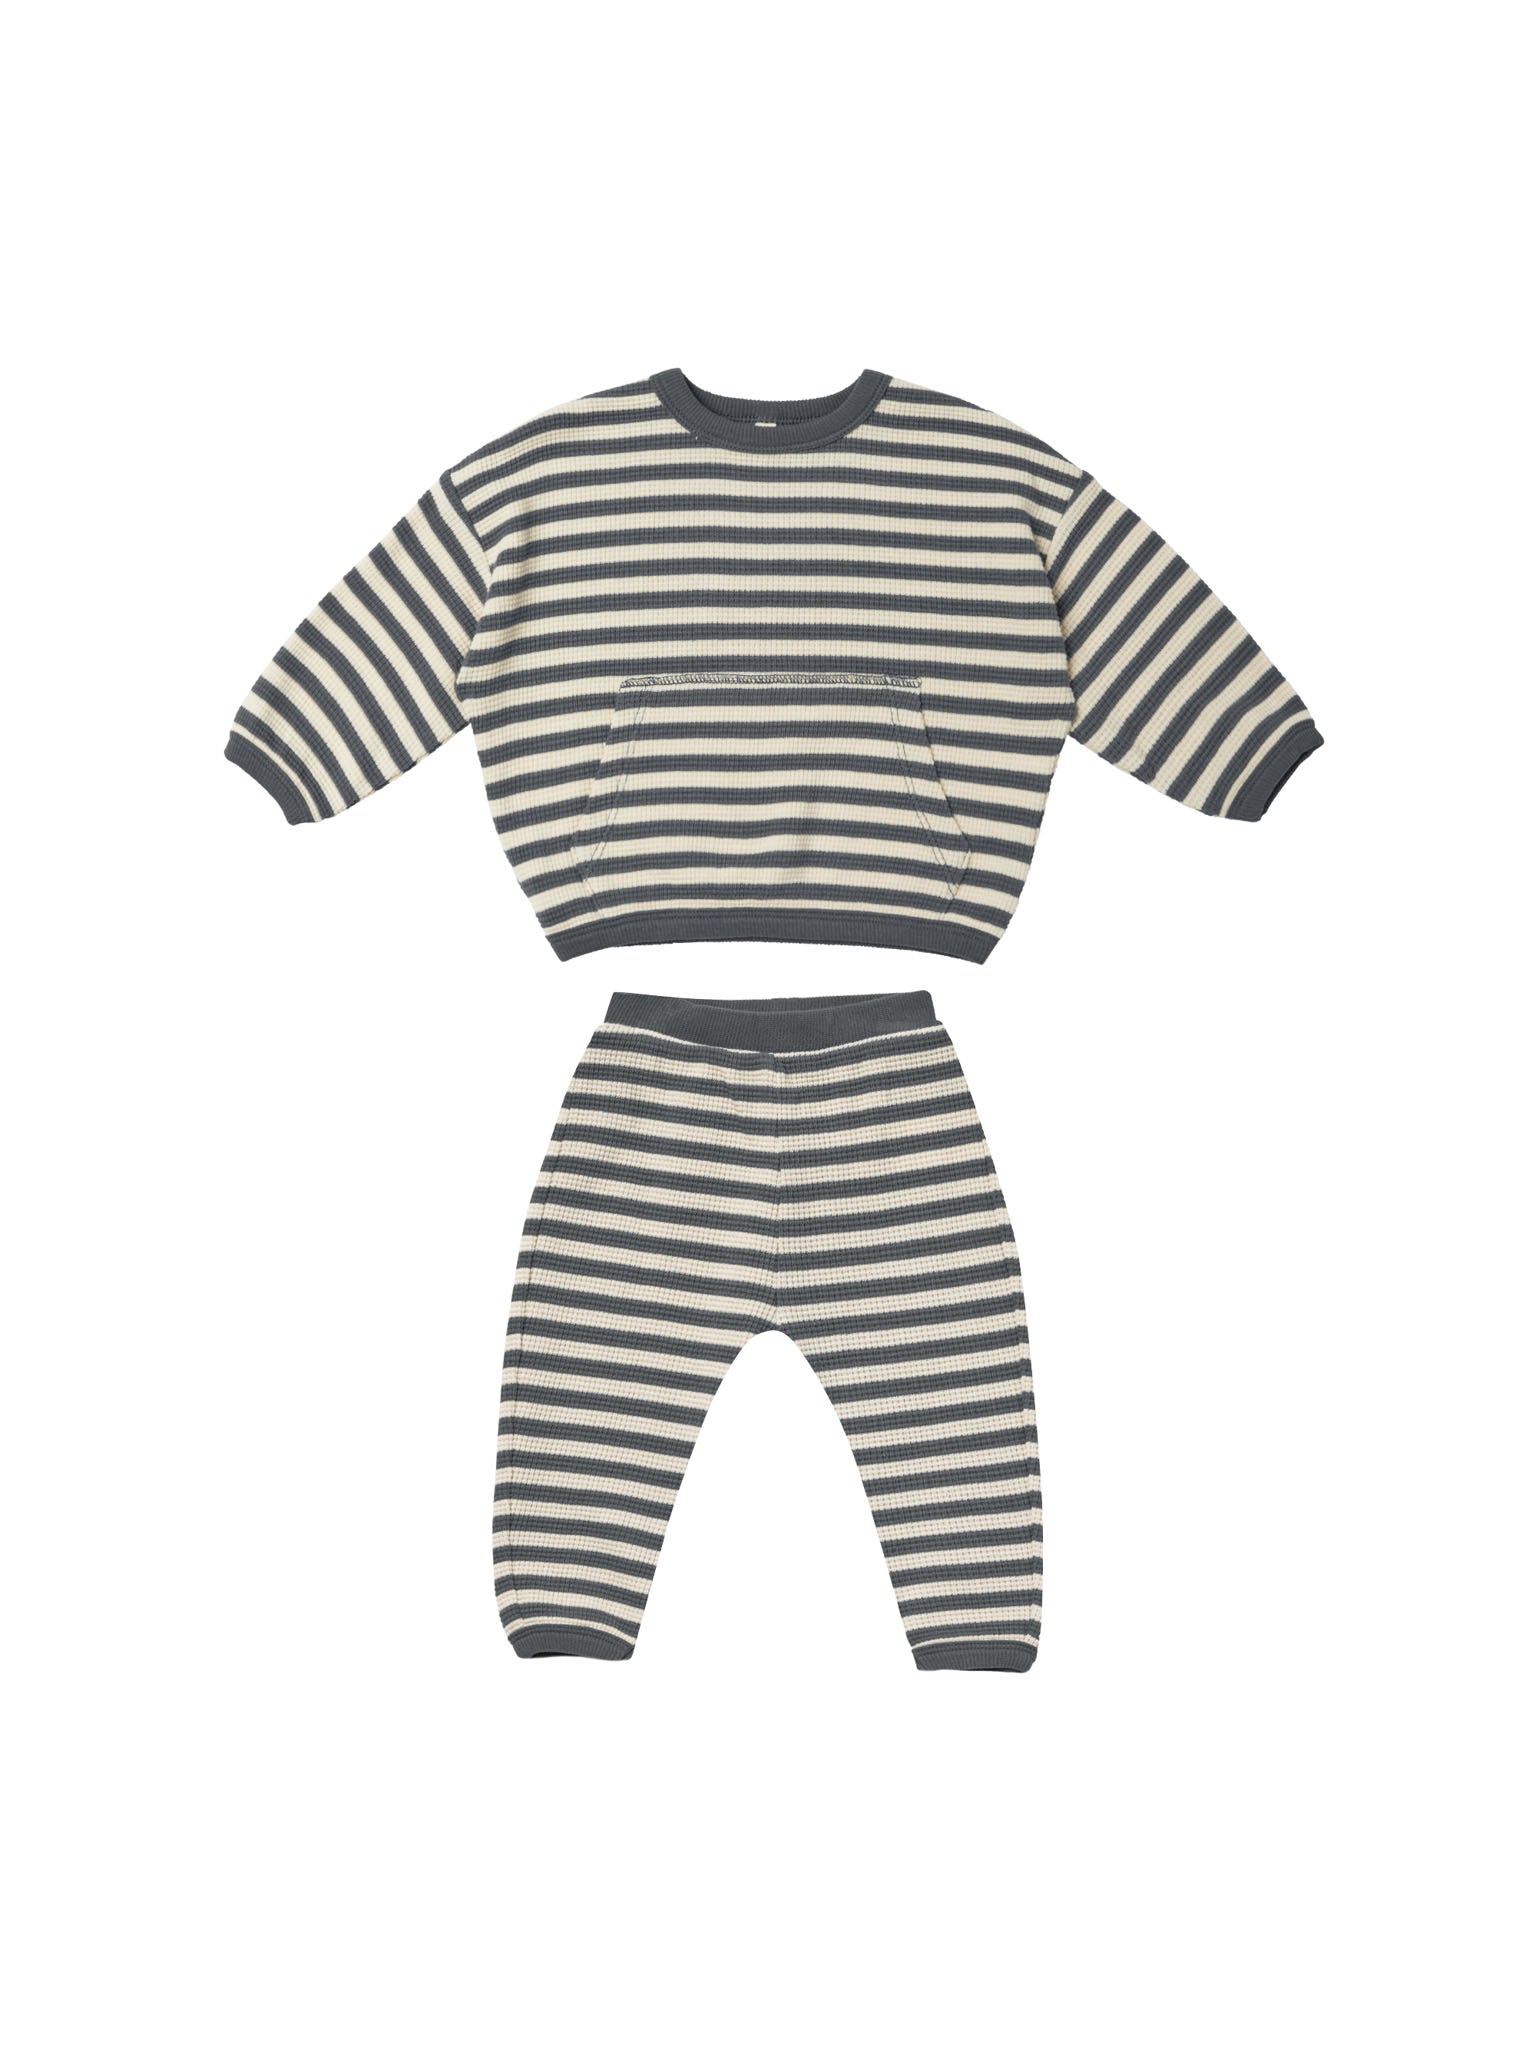 Navy Stripe Waffle Sweater & Pant Set - Twinkle Twinkle Little One